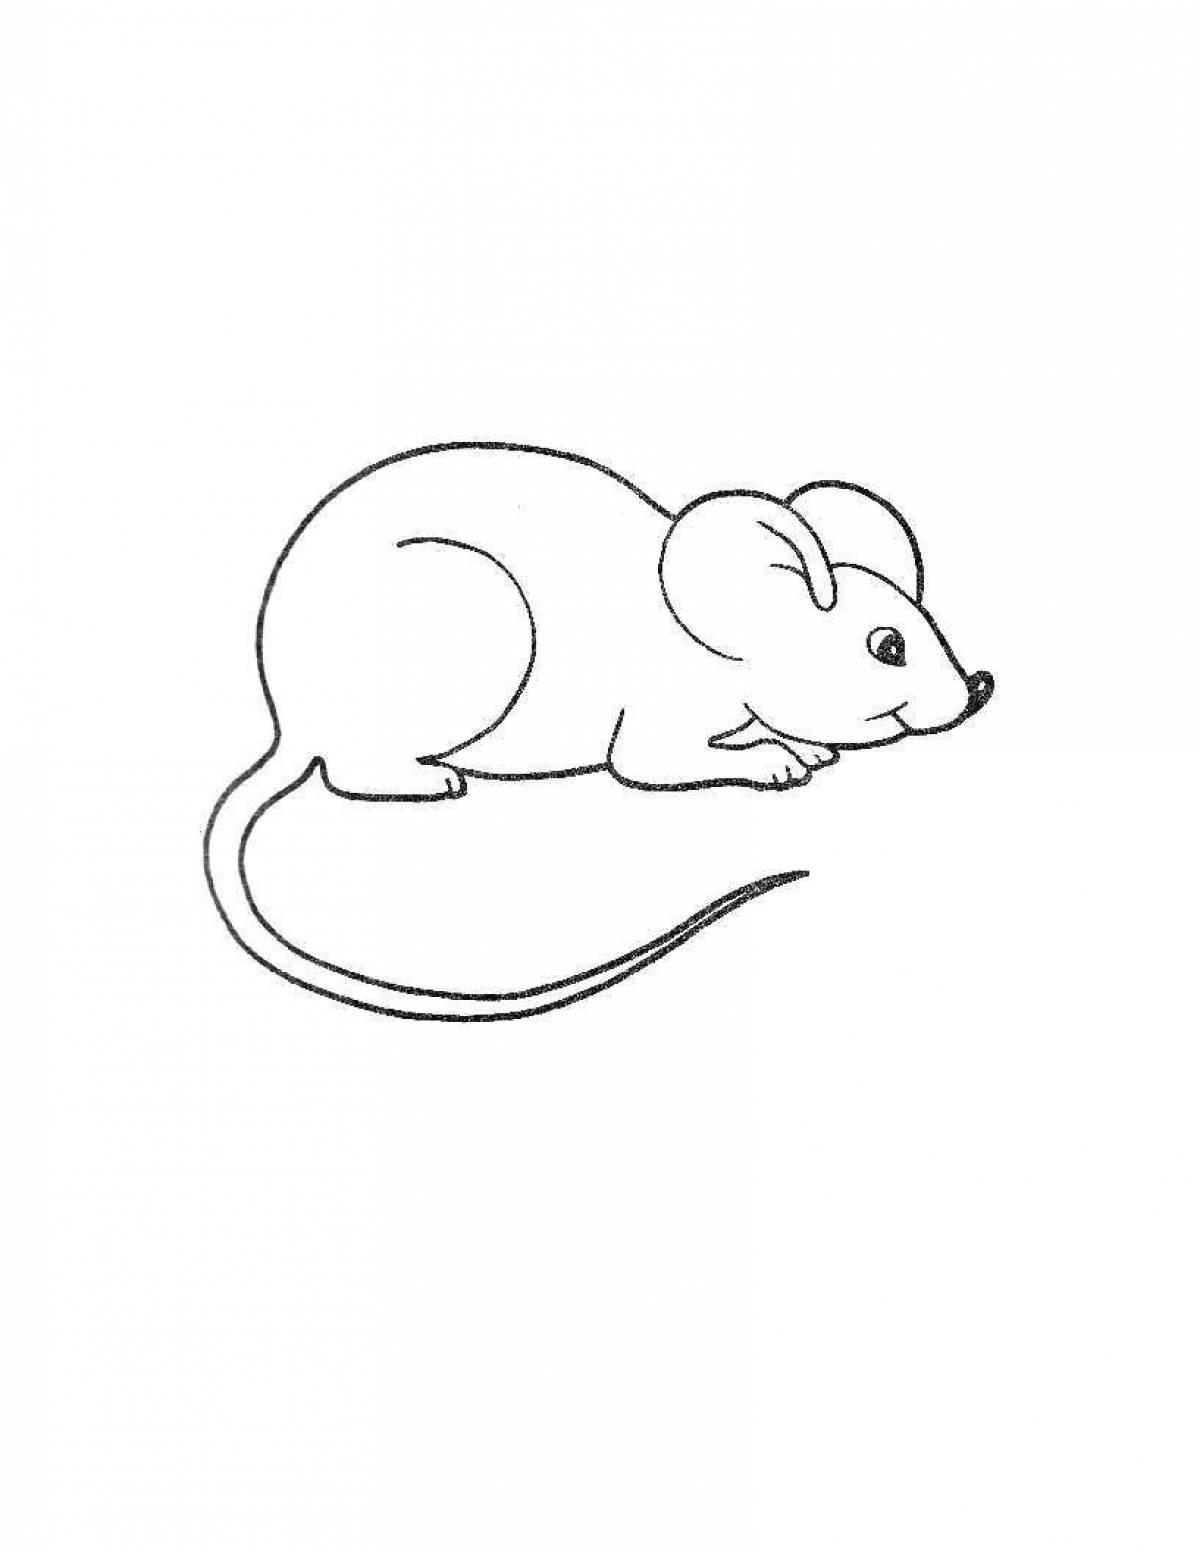 Раскраска мышь распечатать. Раскраска мышка. Мышь раскраска для детей. Раскраска мышонок. Мышонок раскраска для детей.